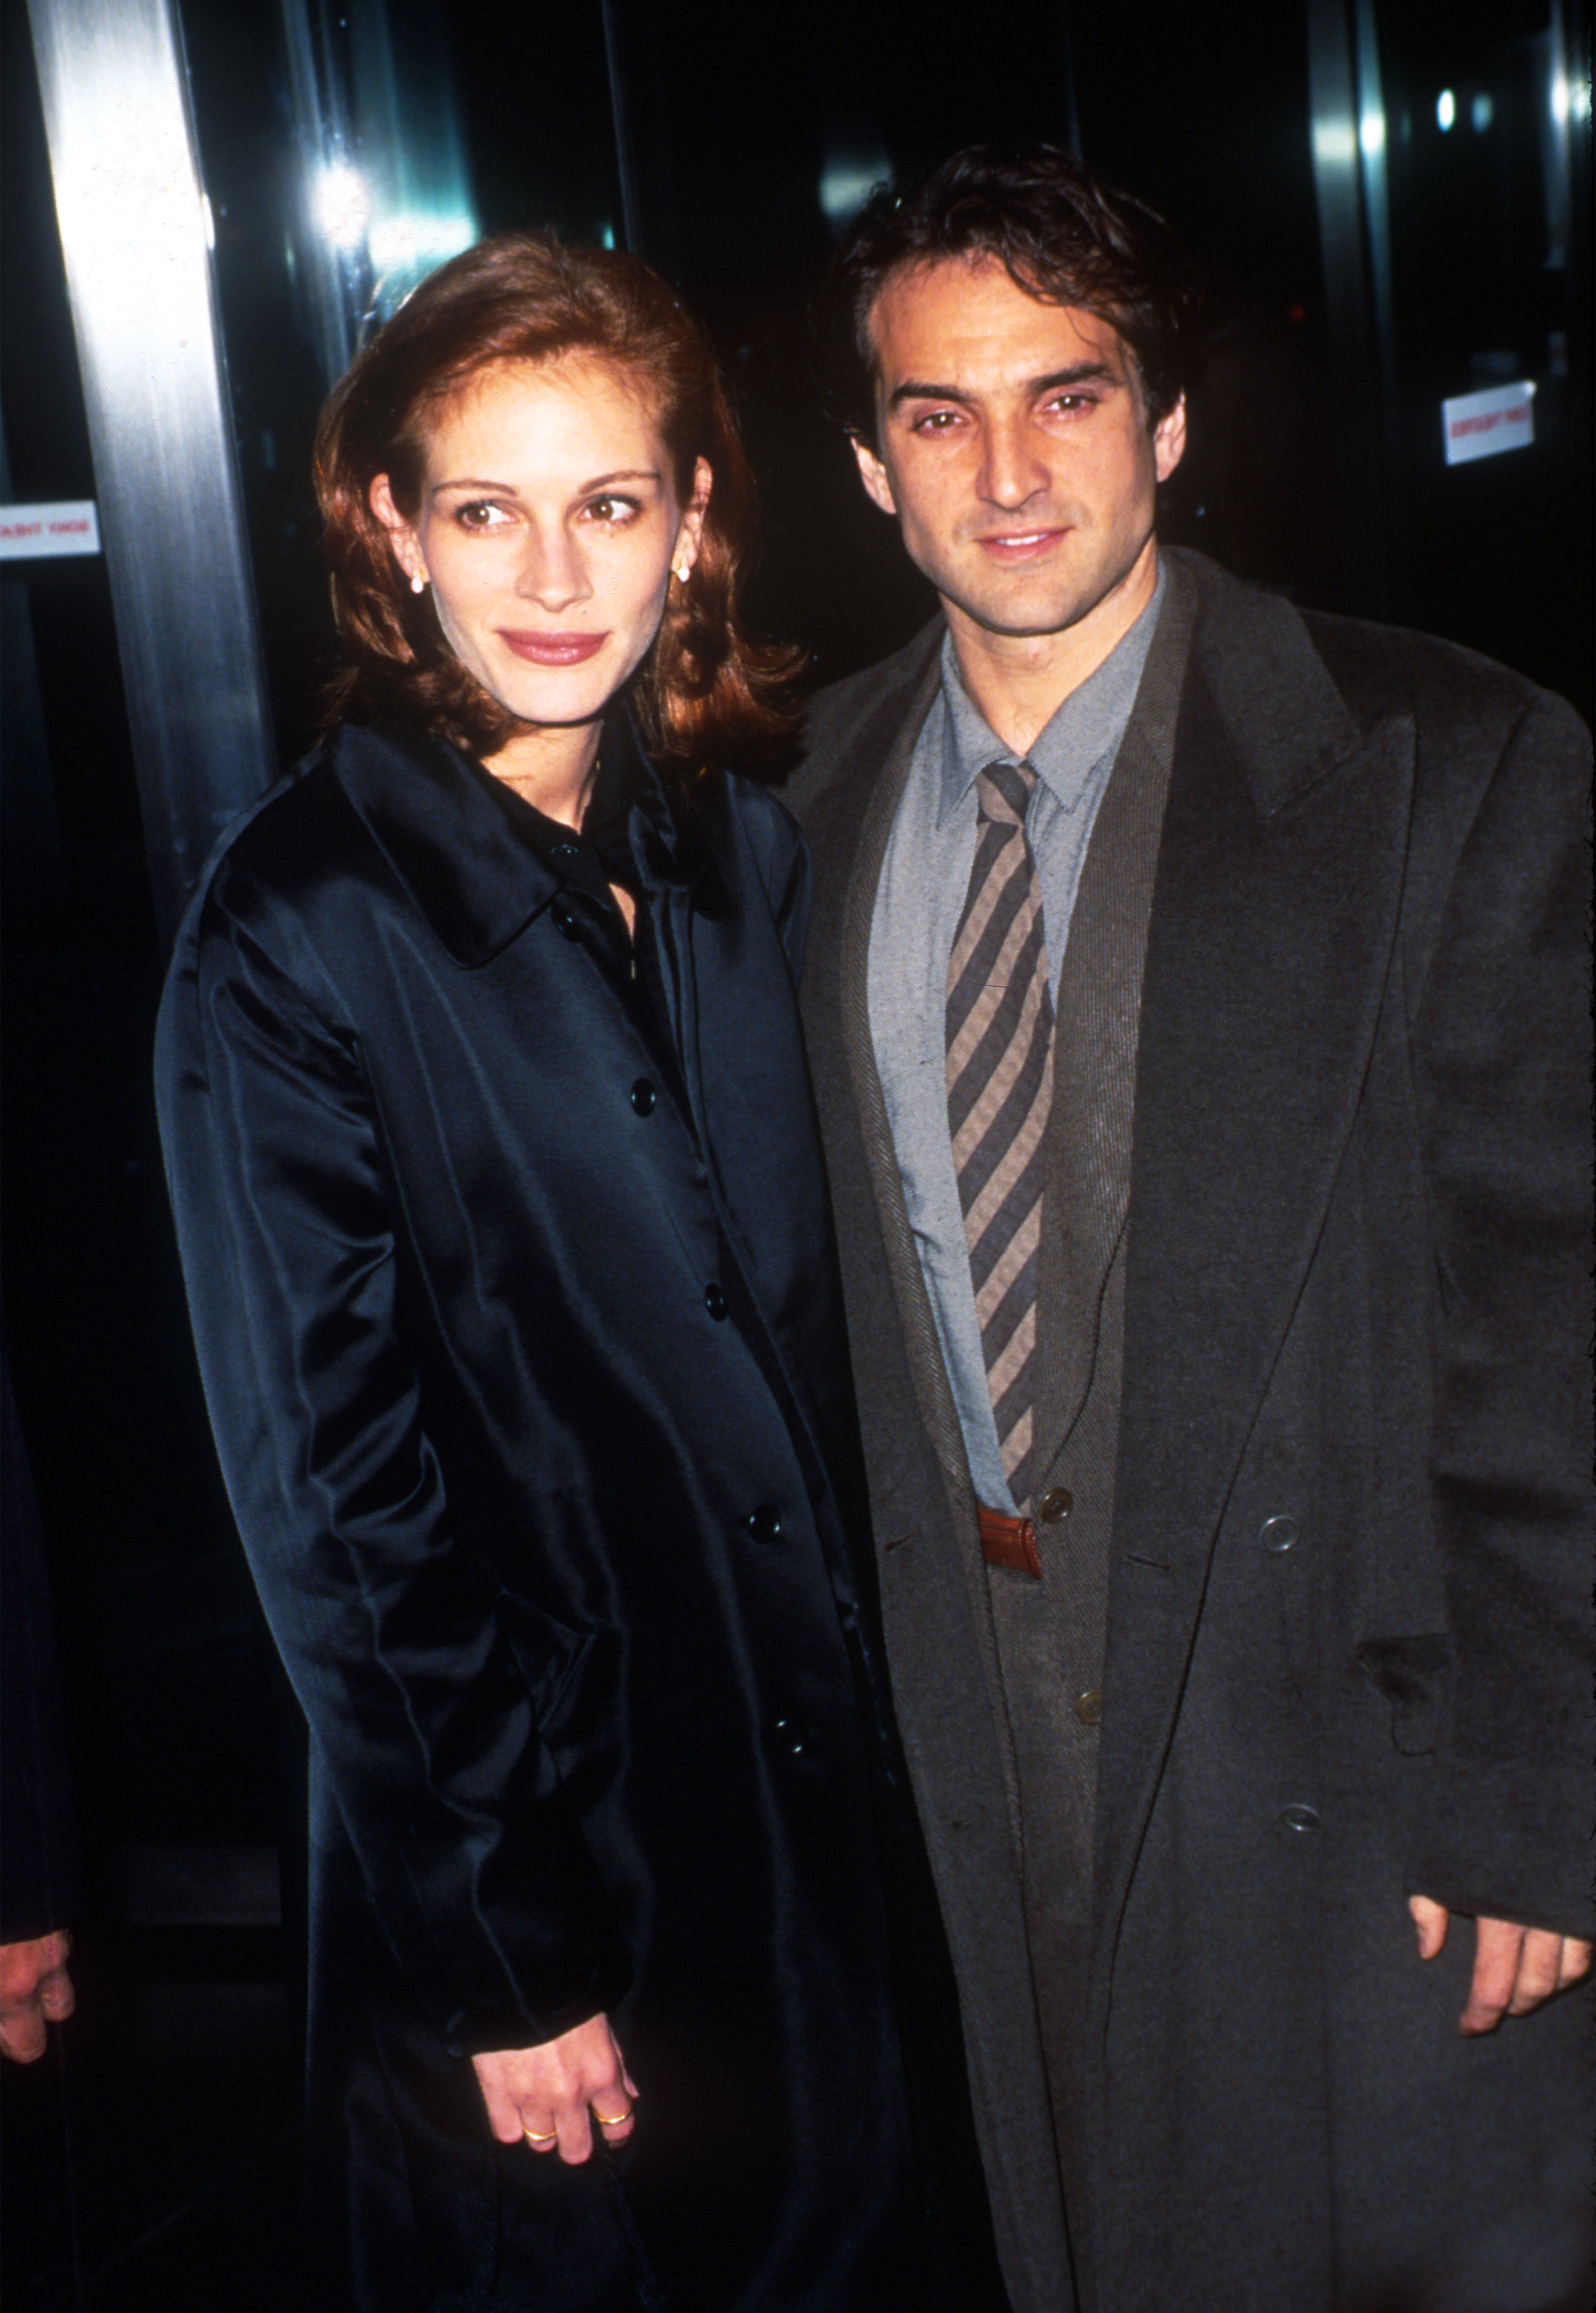 La actriz Julia Roberts con su novio Patrick Manoccia llegan al estreno de una película en Nueva York, el 10 de octubre de 1996 | Foto: Getty Images